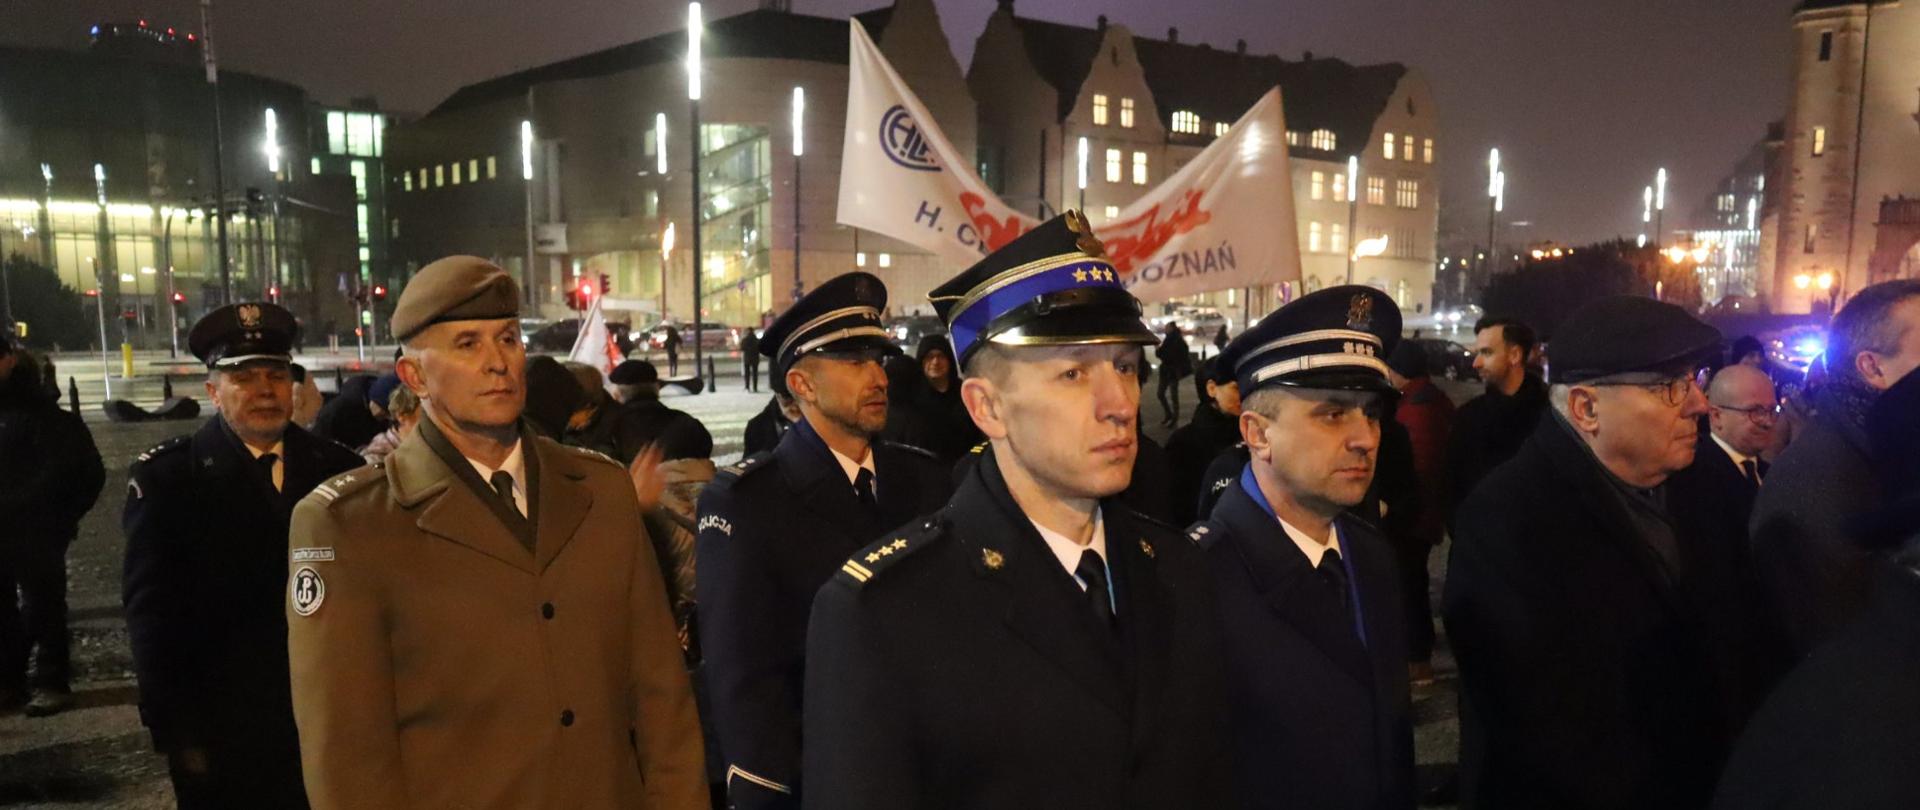 Zastępca Wielkopolskiego Komendanta Wojewódzkiego PSP wziął udział uroczystościach upamiętniających 42. rocznicę wprowadzenia stanu wojennego